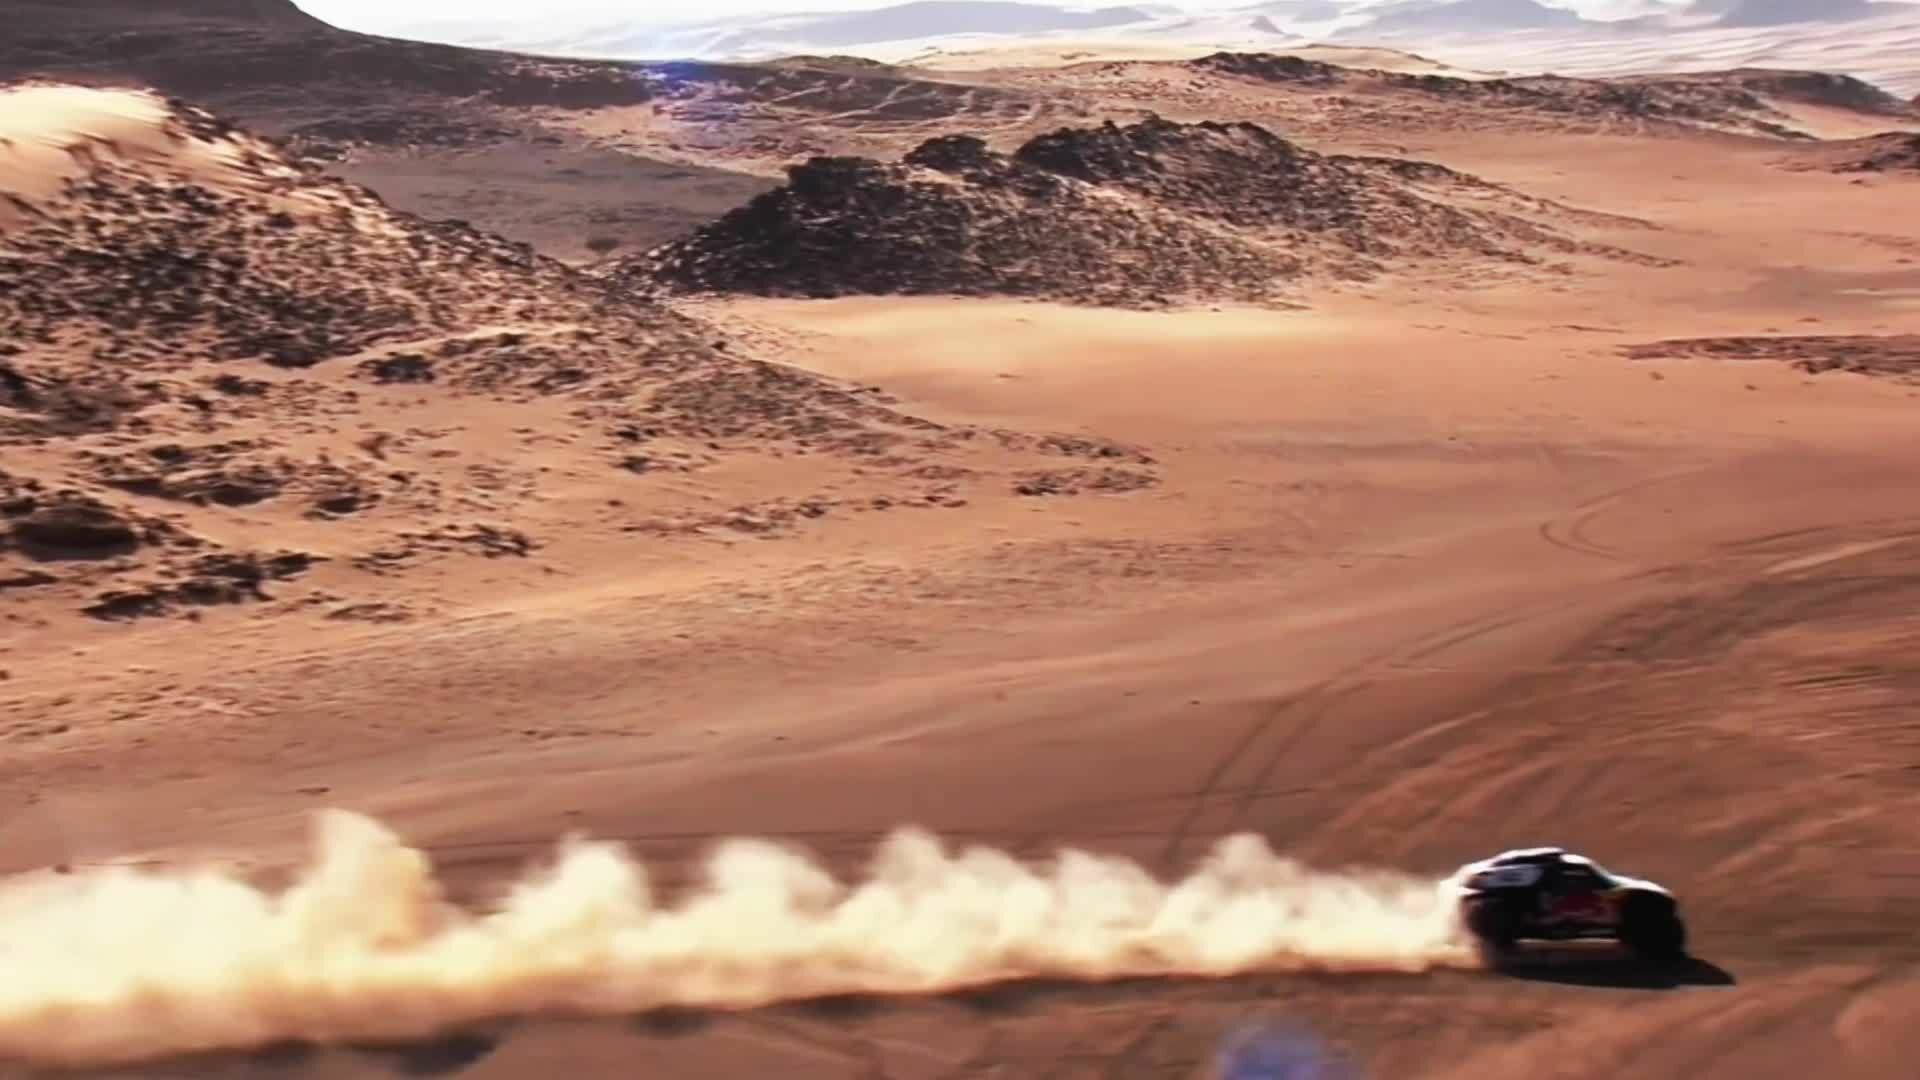 Audi RS Q e-tron: Testlabor für mögliche Zukunftstechnologien bei der Rallye Dakar